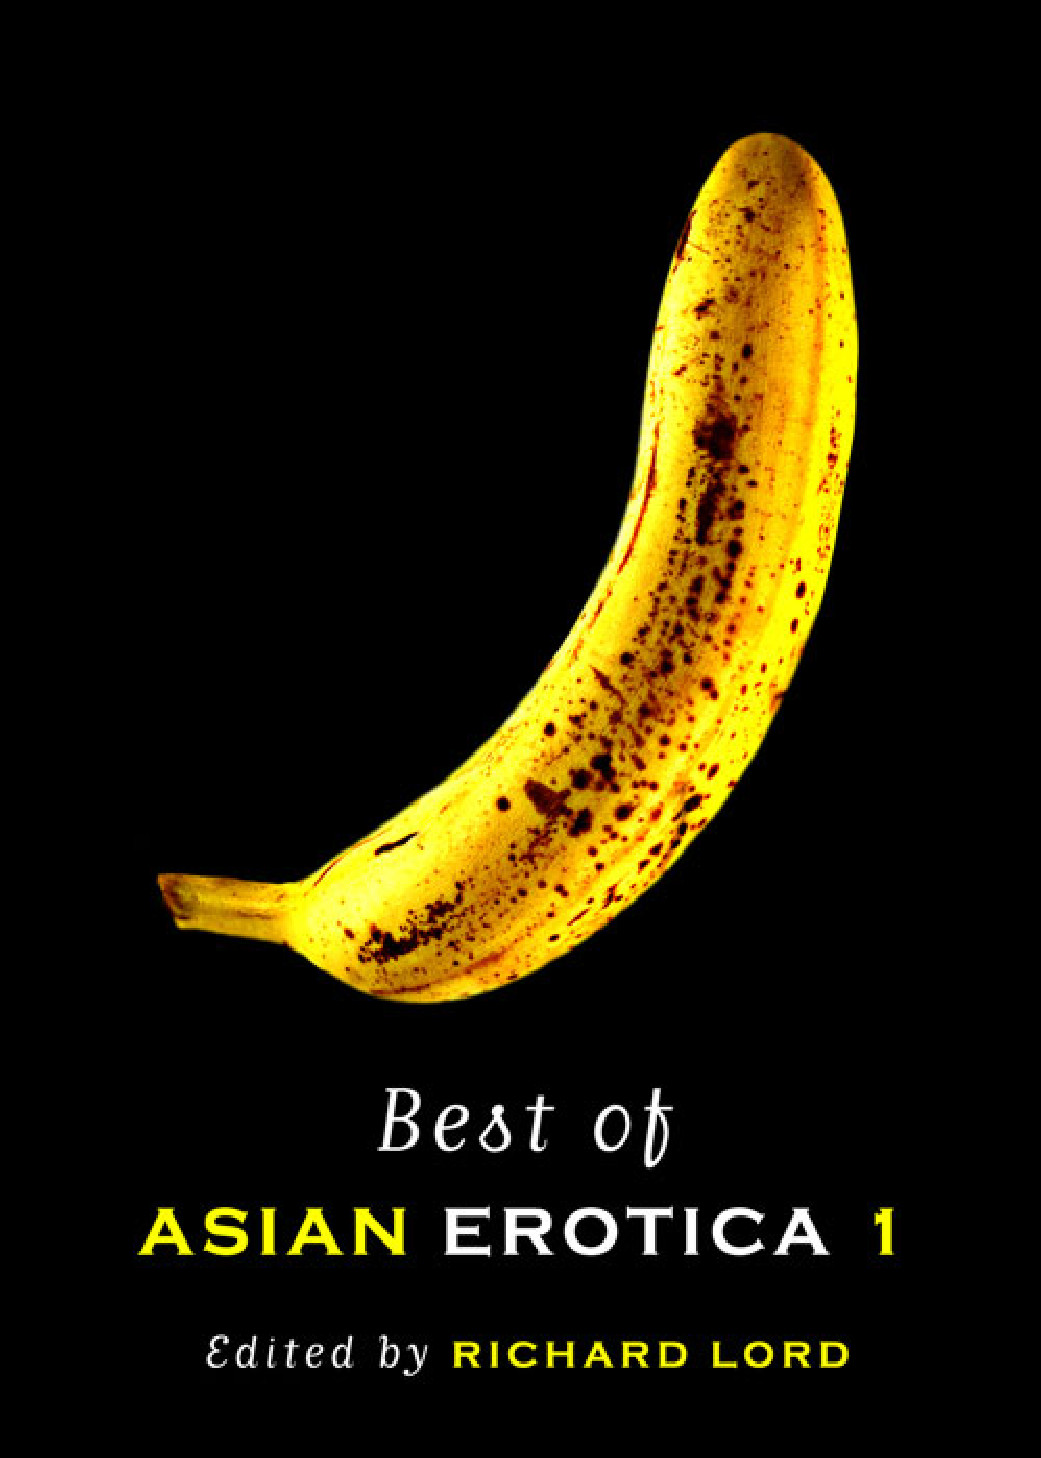 Asian Erotica